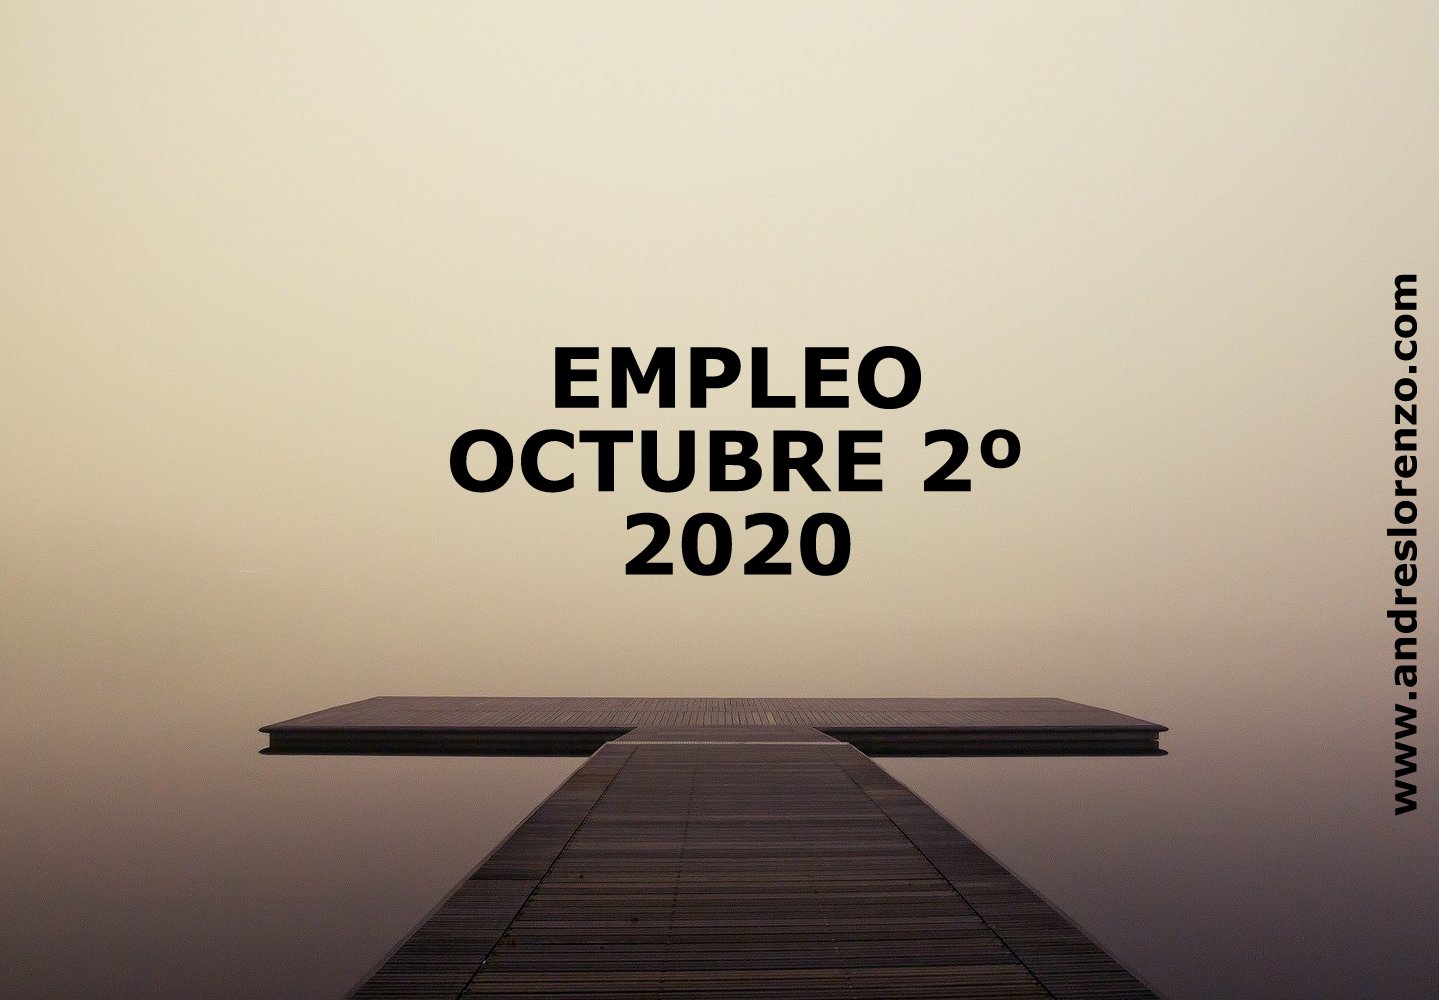 EMPLEO OCTUBRE 2º 2020